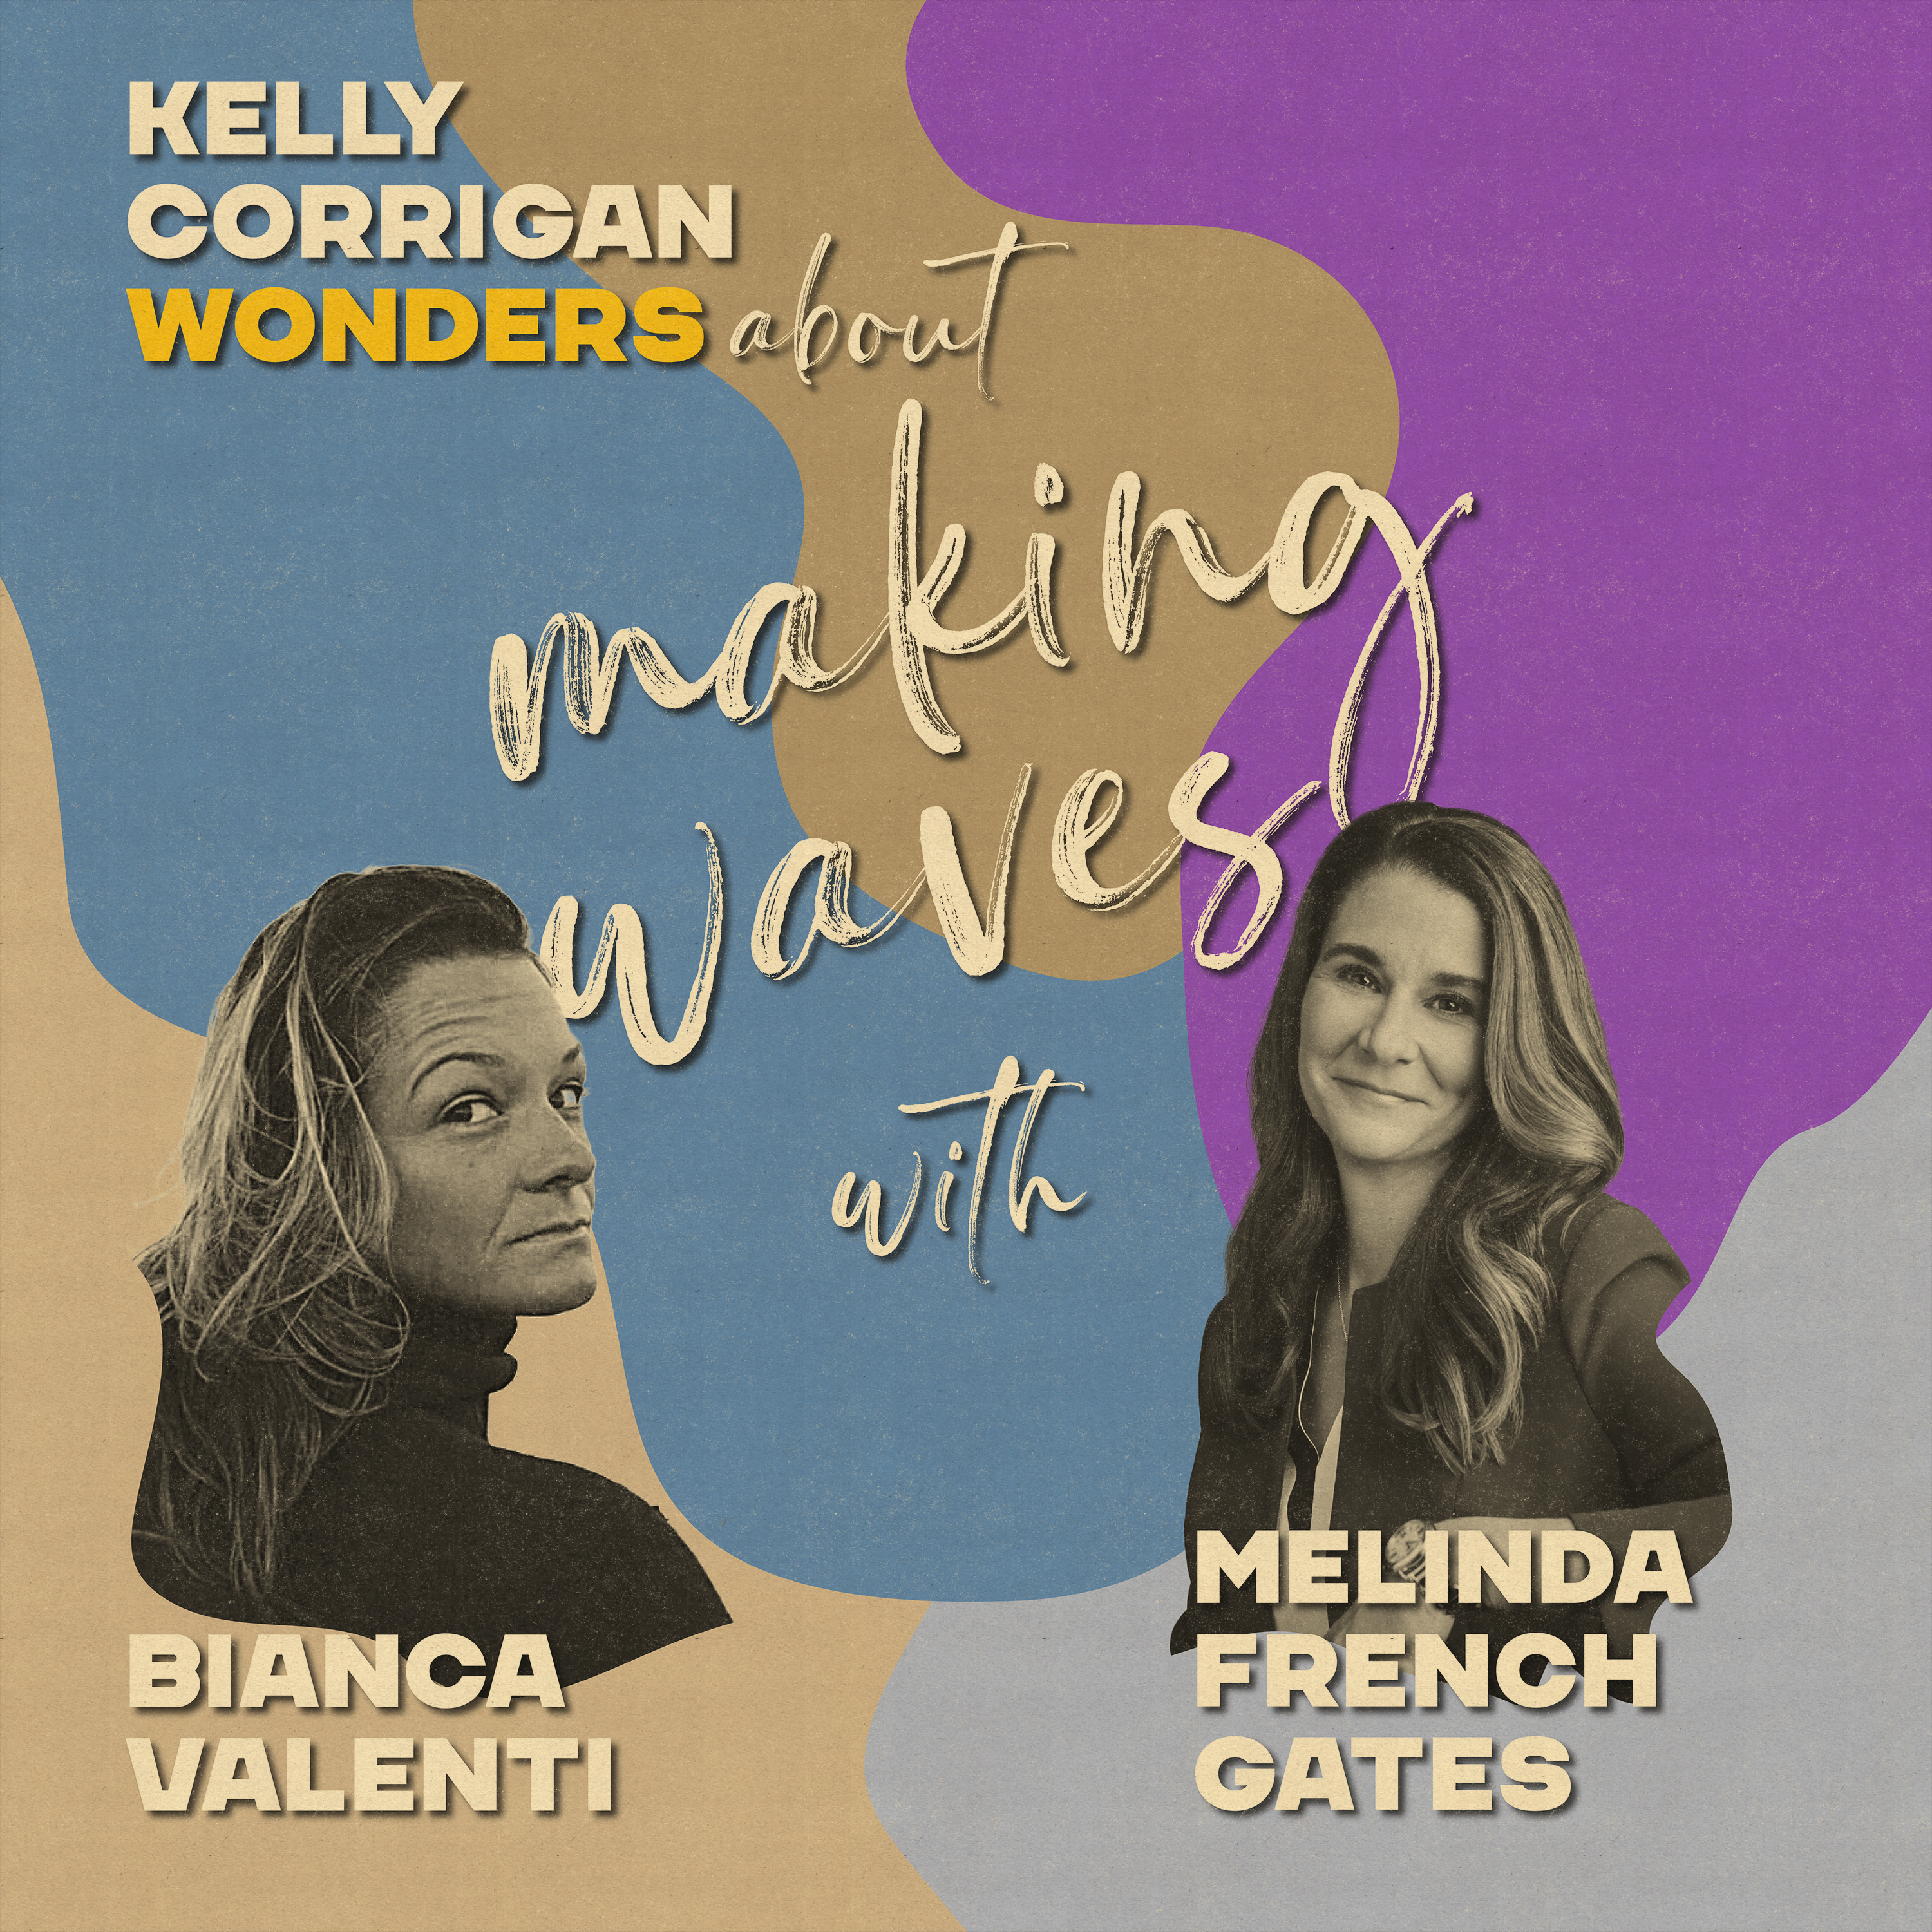 Bianca Valenti and Melinda French Gates on Making Waves